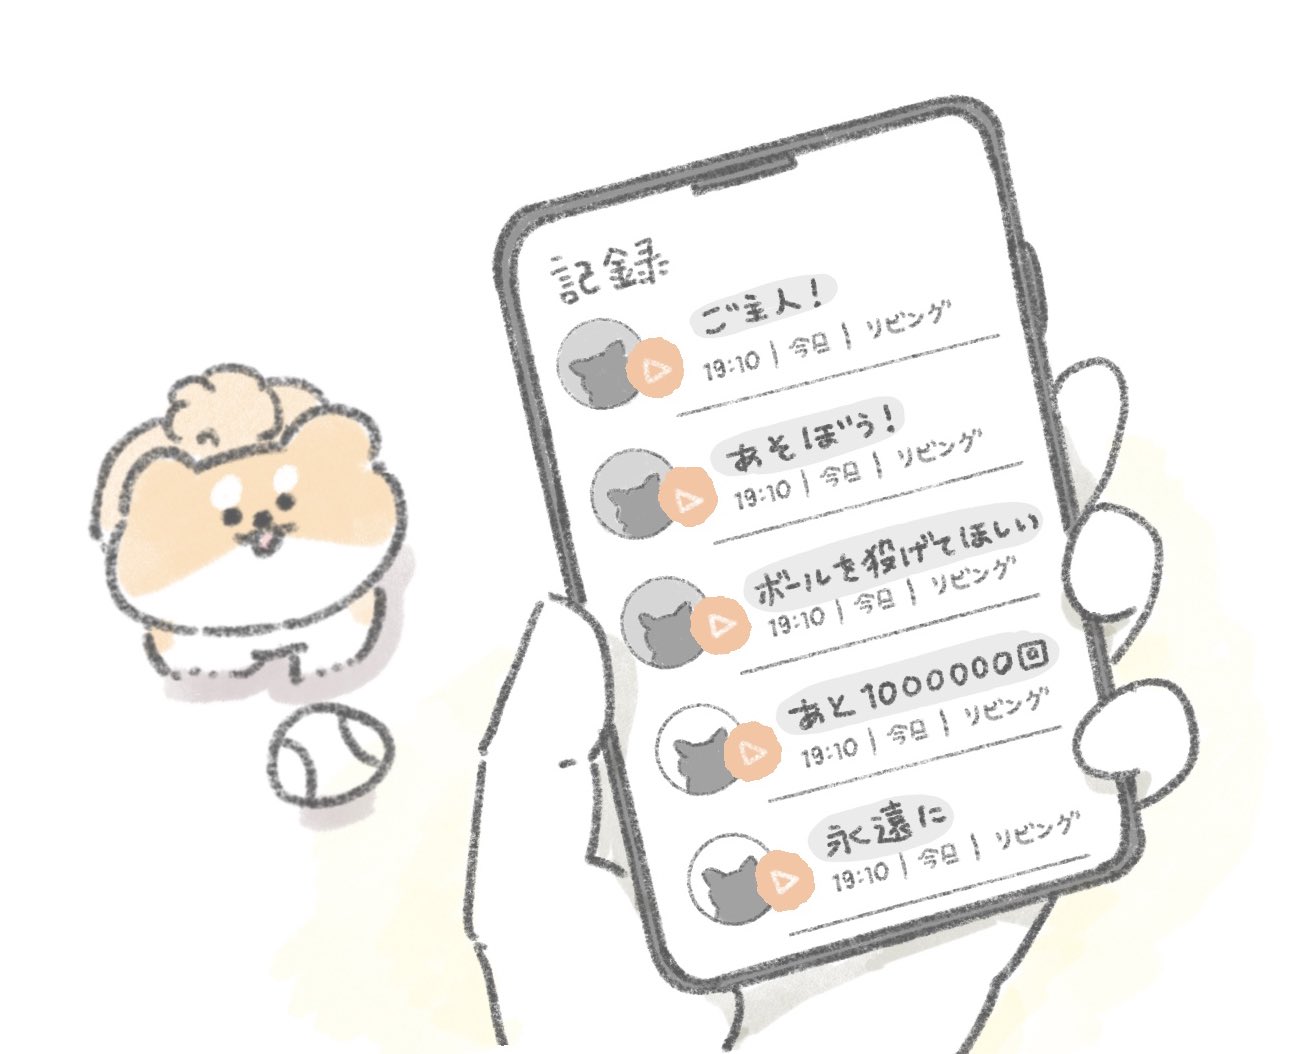 じゅん 猫語翻訳アプリではなく 犬語翻訳アプリをおいぬ達に使ってみたら T Co Ylw8t41yny Twitter